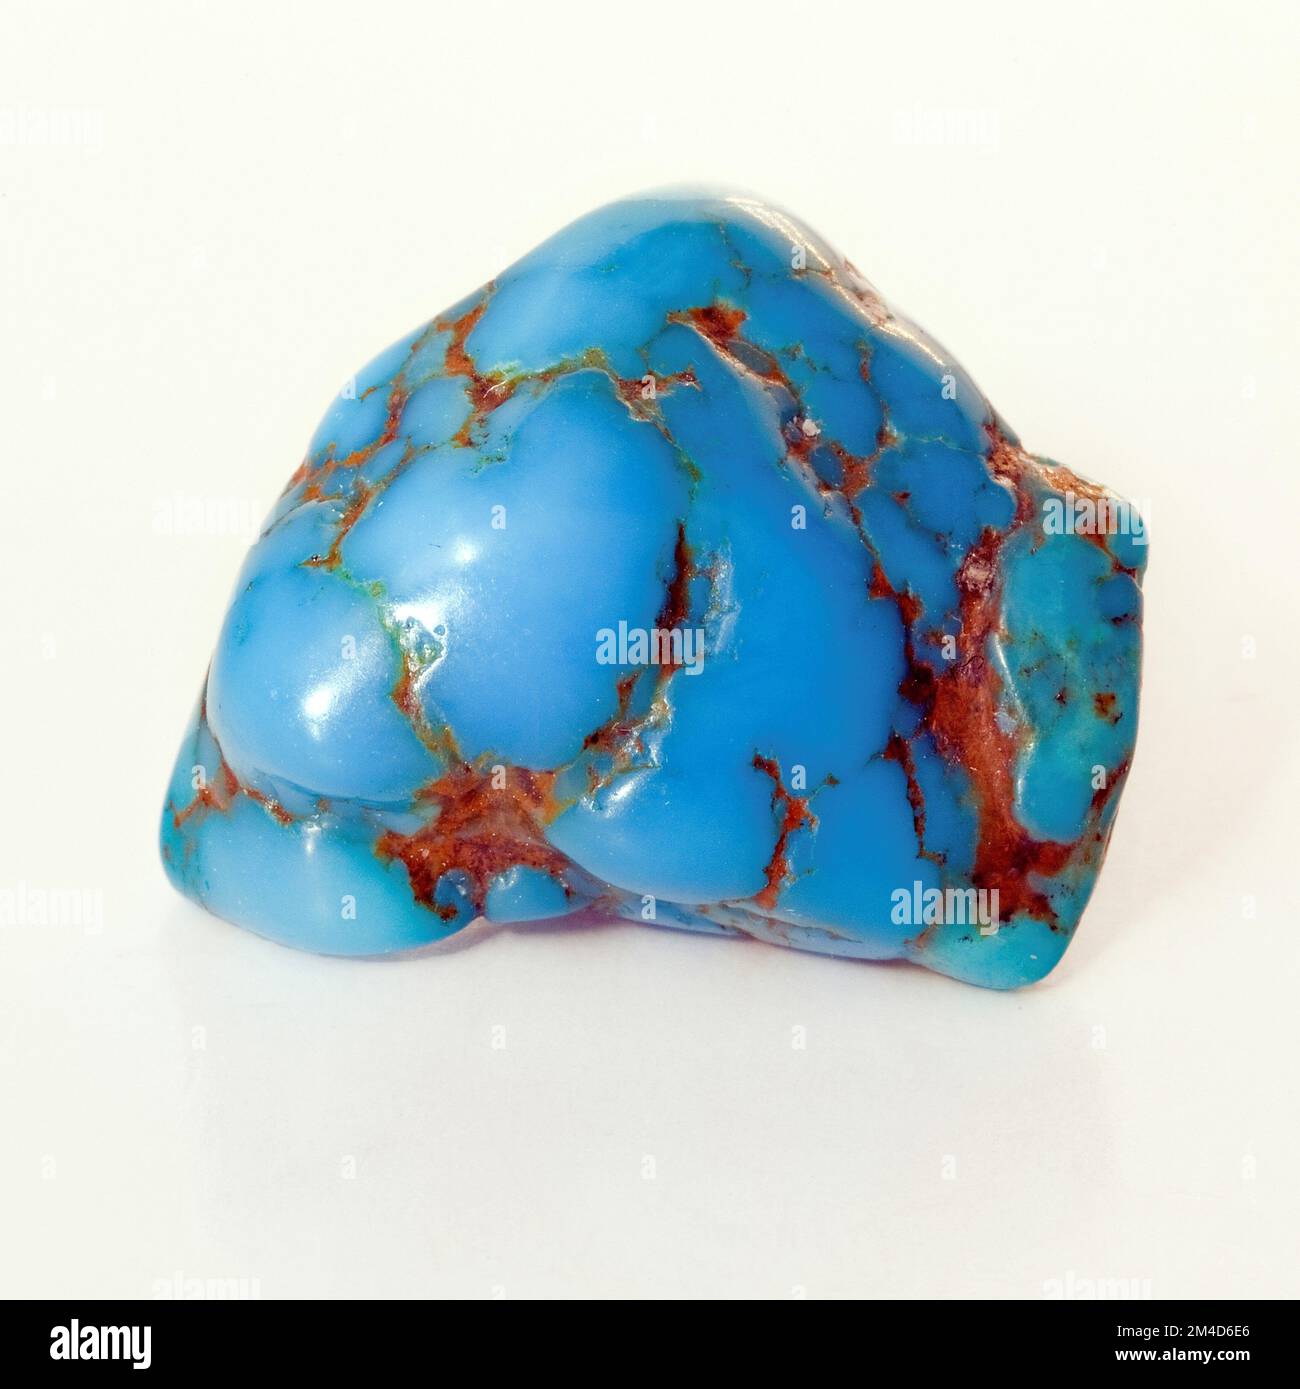 Macro gros plan photo couleur d'un poli ' Turquoise ' une pierre précieuse de cristal semi-précieuse utilisée dans la thérapie de guérison de cristal Banque D'Images